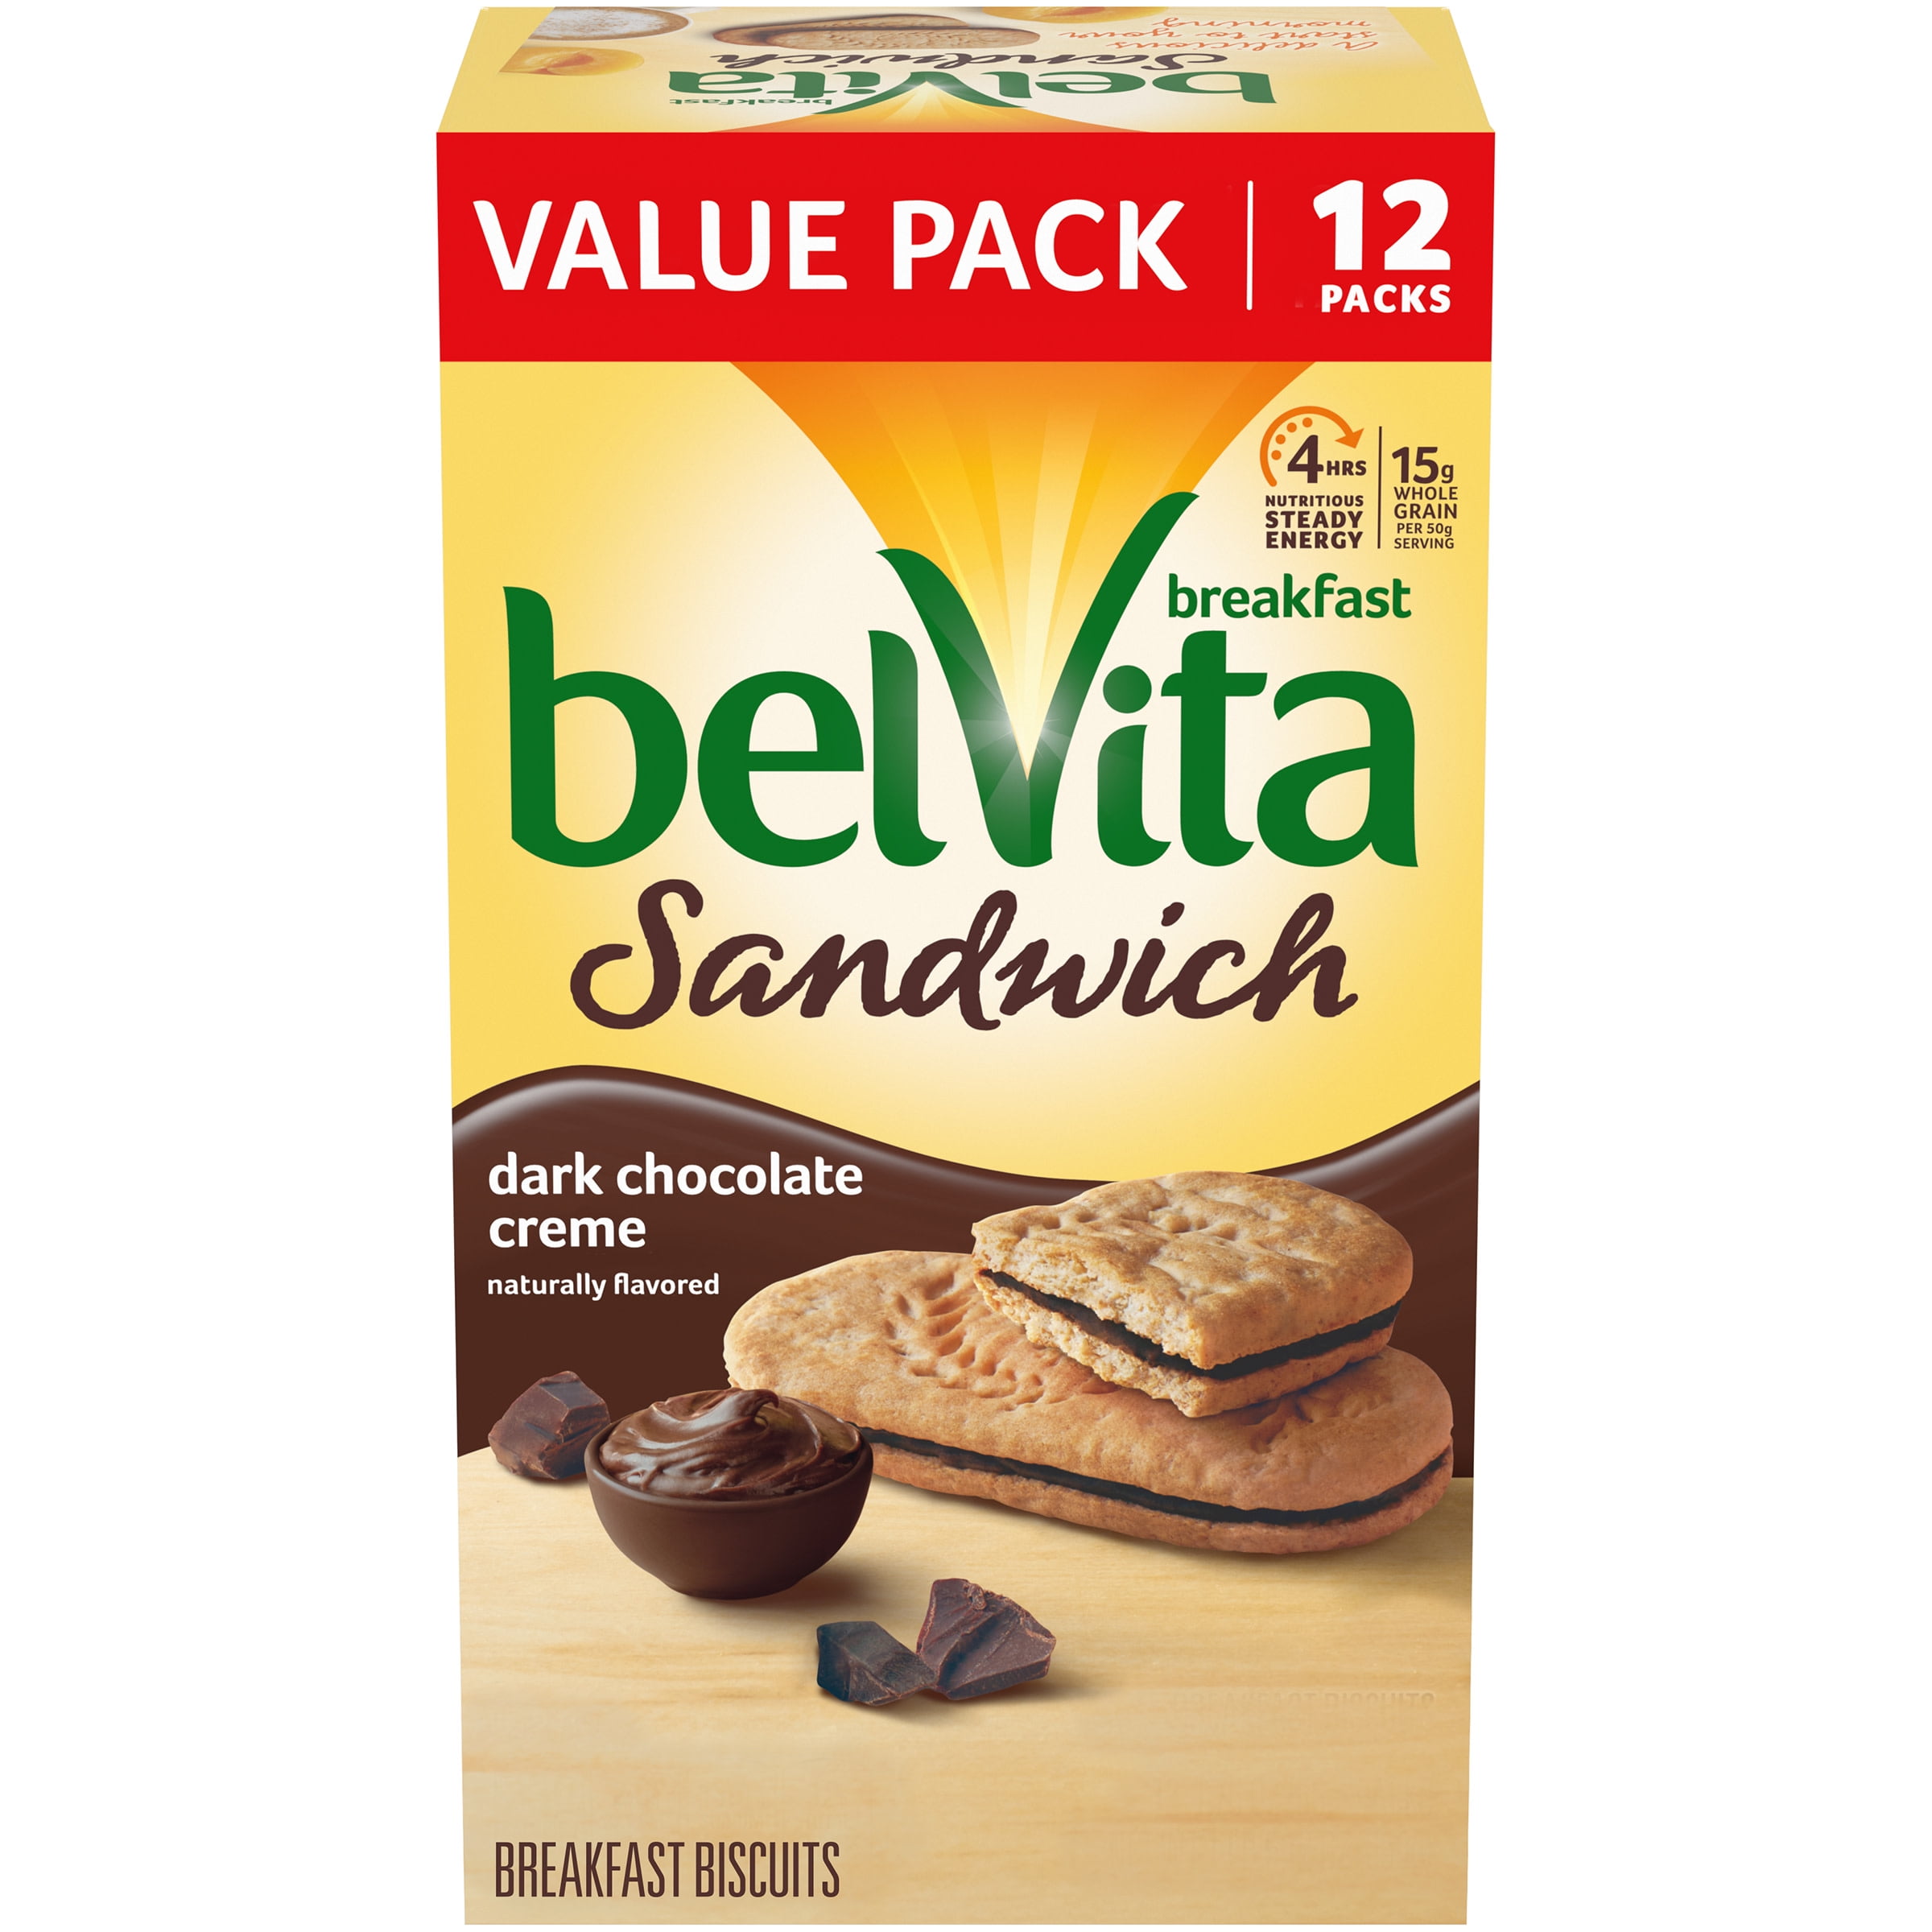 belVita Sandwich Dark Chocolate Creme Breakfast Biscuits, 12 Packs (2 Sandwiches Per Pack)